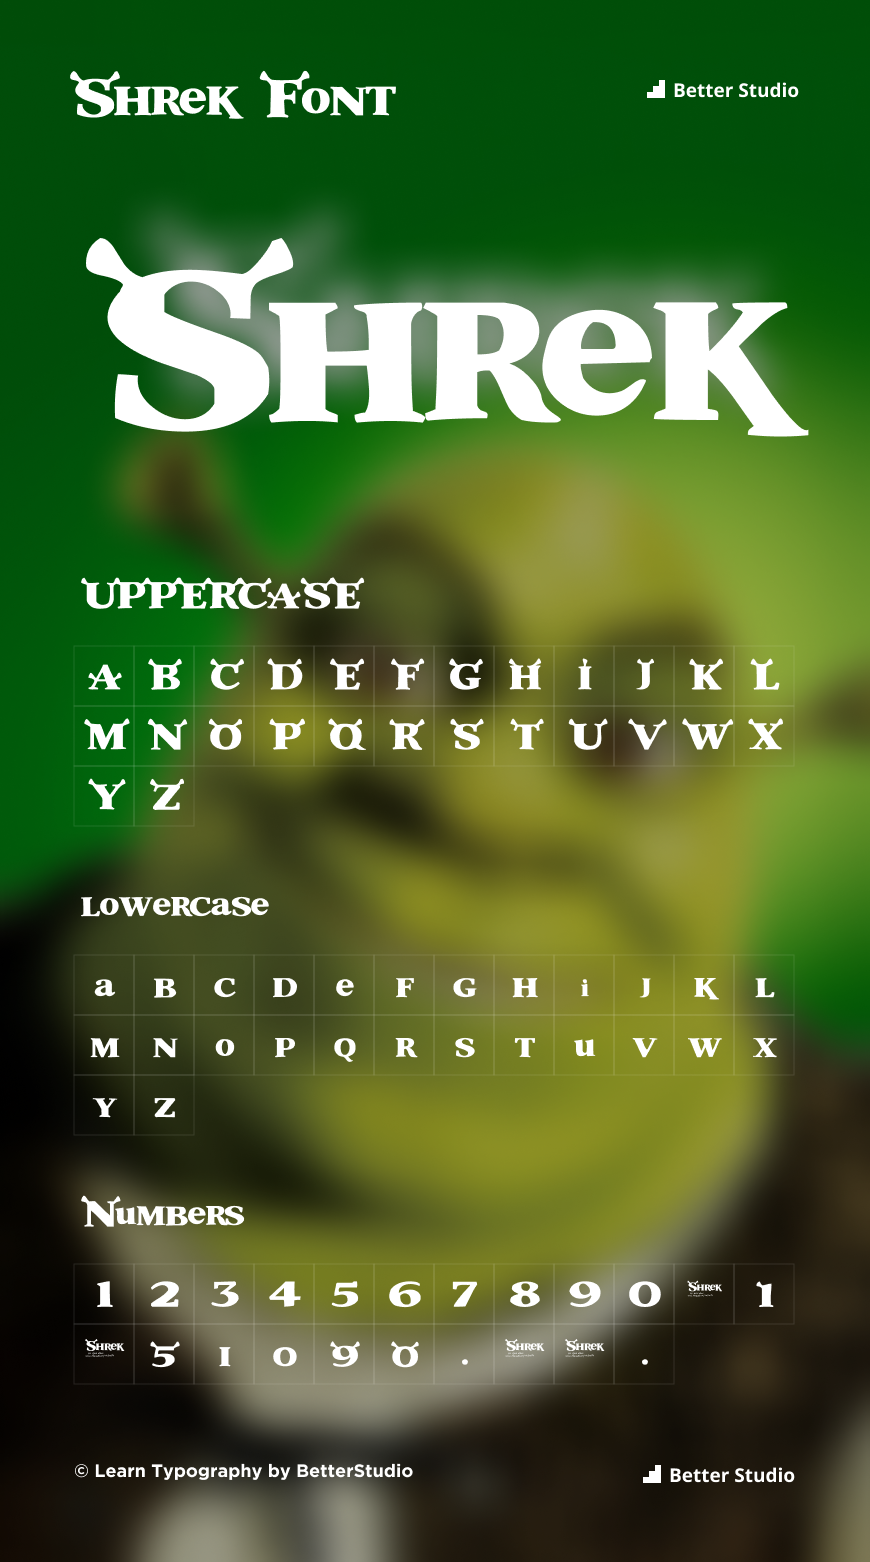 Shrek Font Generator - FREE Download - FontBolt